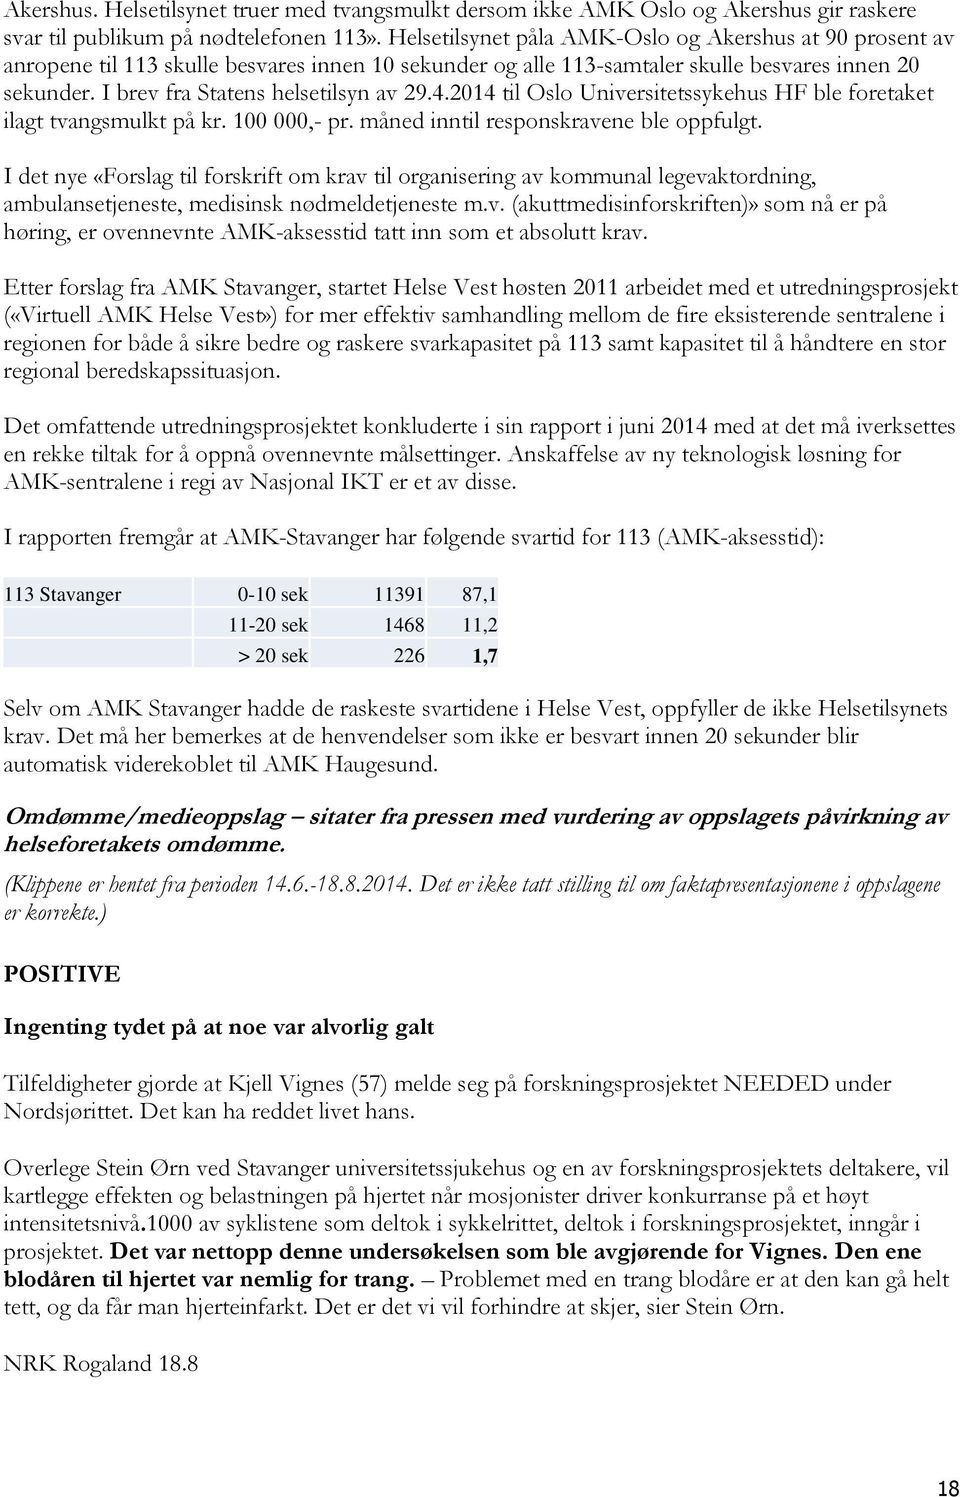 I brev fra Statens helsetilsyn av 29.4.2014 til Oslo Universitetssykehus HF ble foretaket ilagt tvangsmulkt på kr. 100 000,- pr. måned inntil responskravene ble oppfulgt.